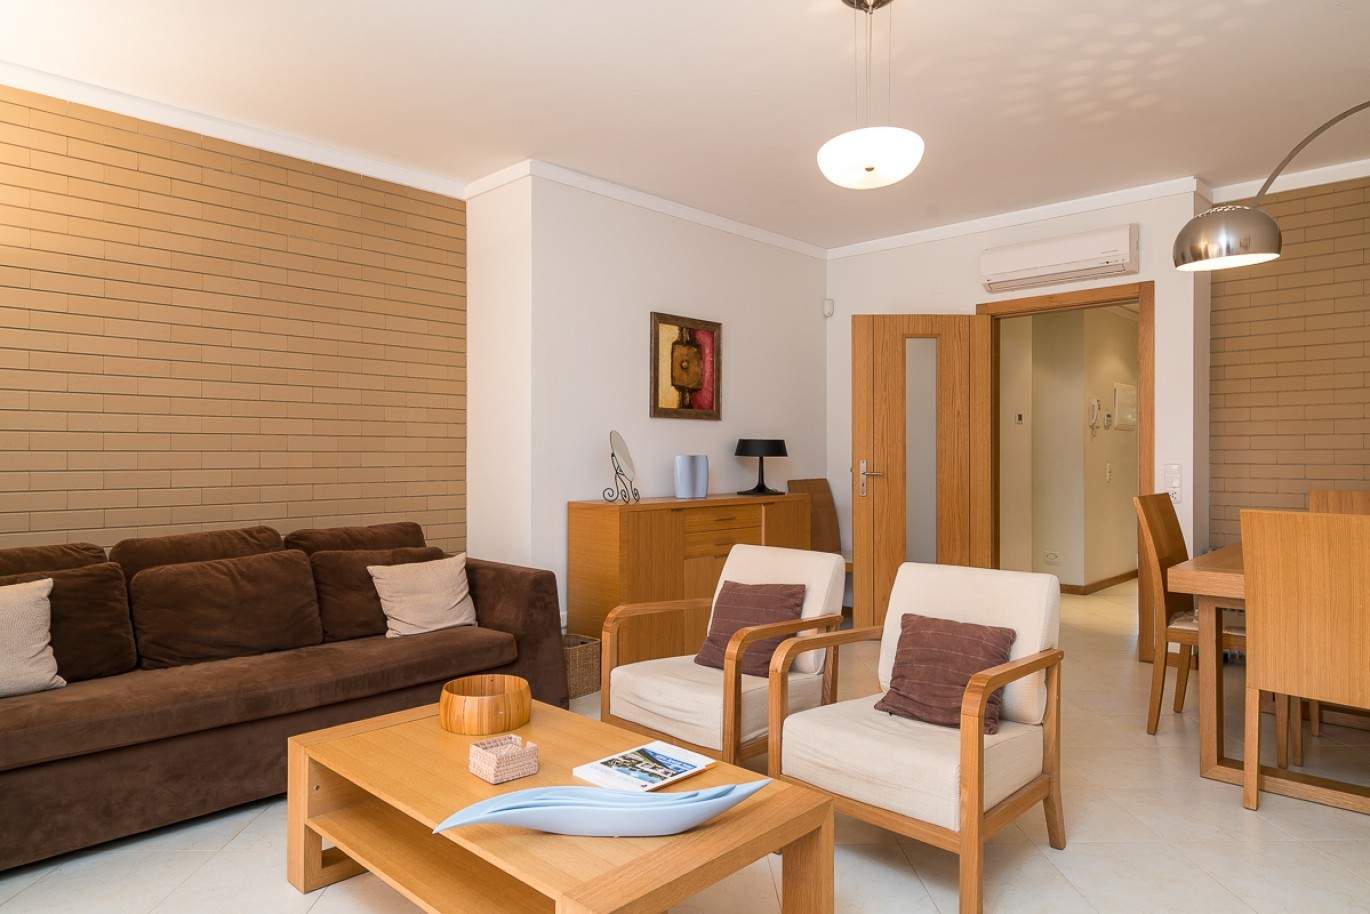 Vente appartement, piscine, près de la plage et le golf à Vilamoura, Algarve, Portugal_78068